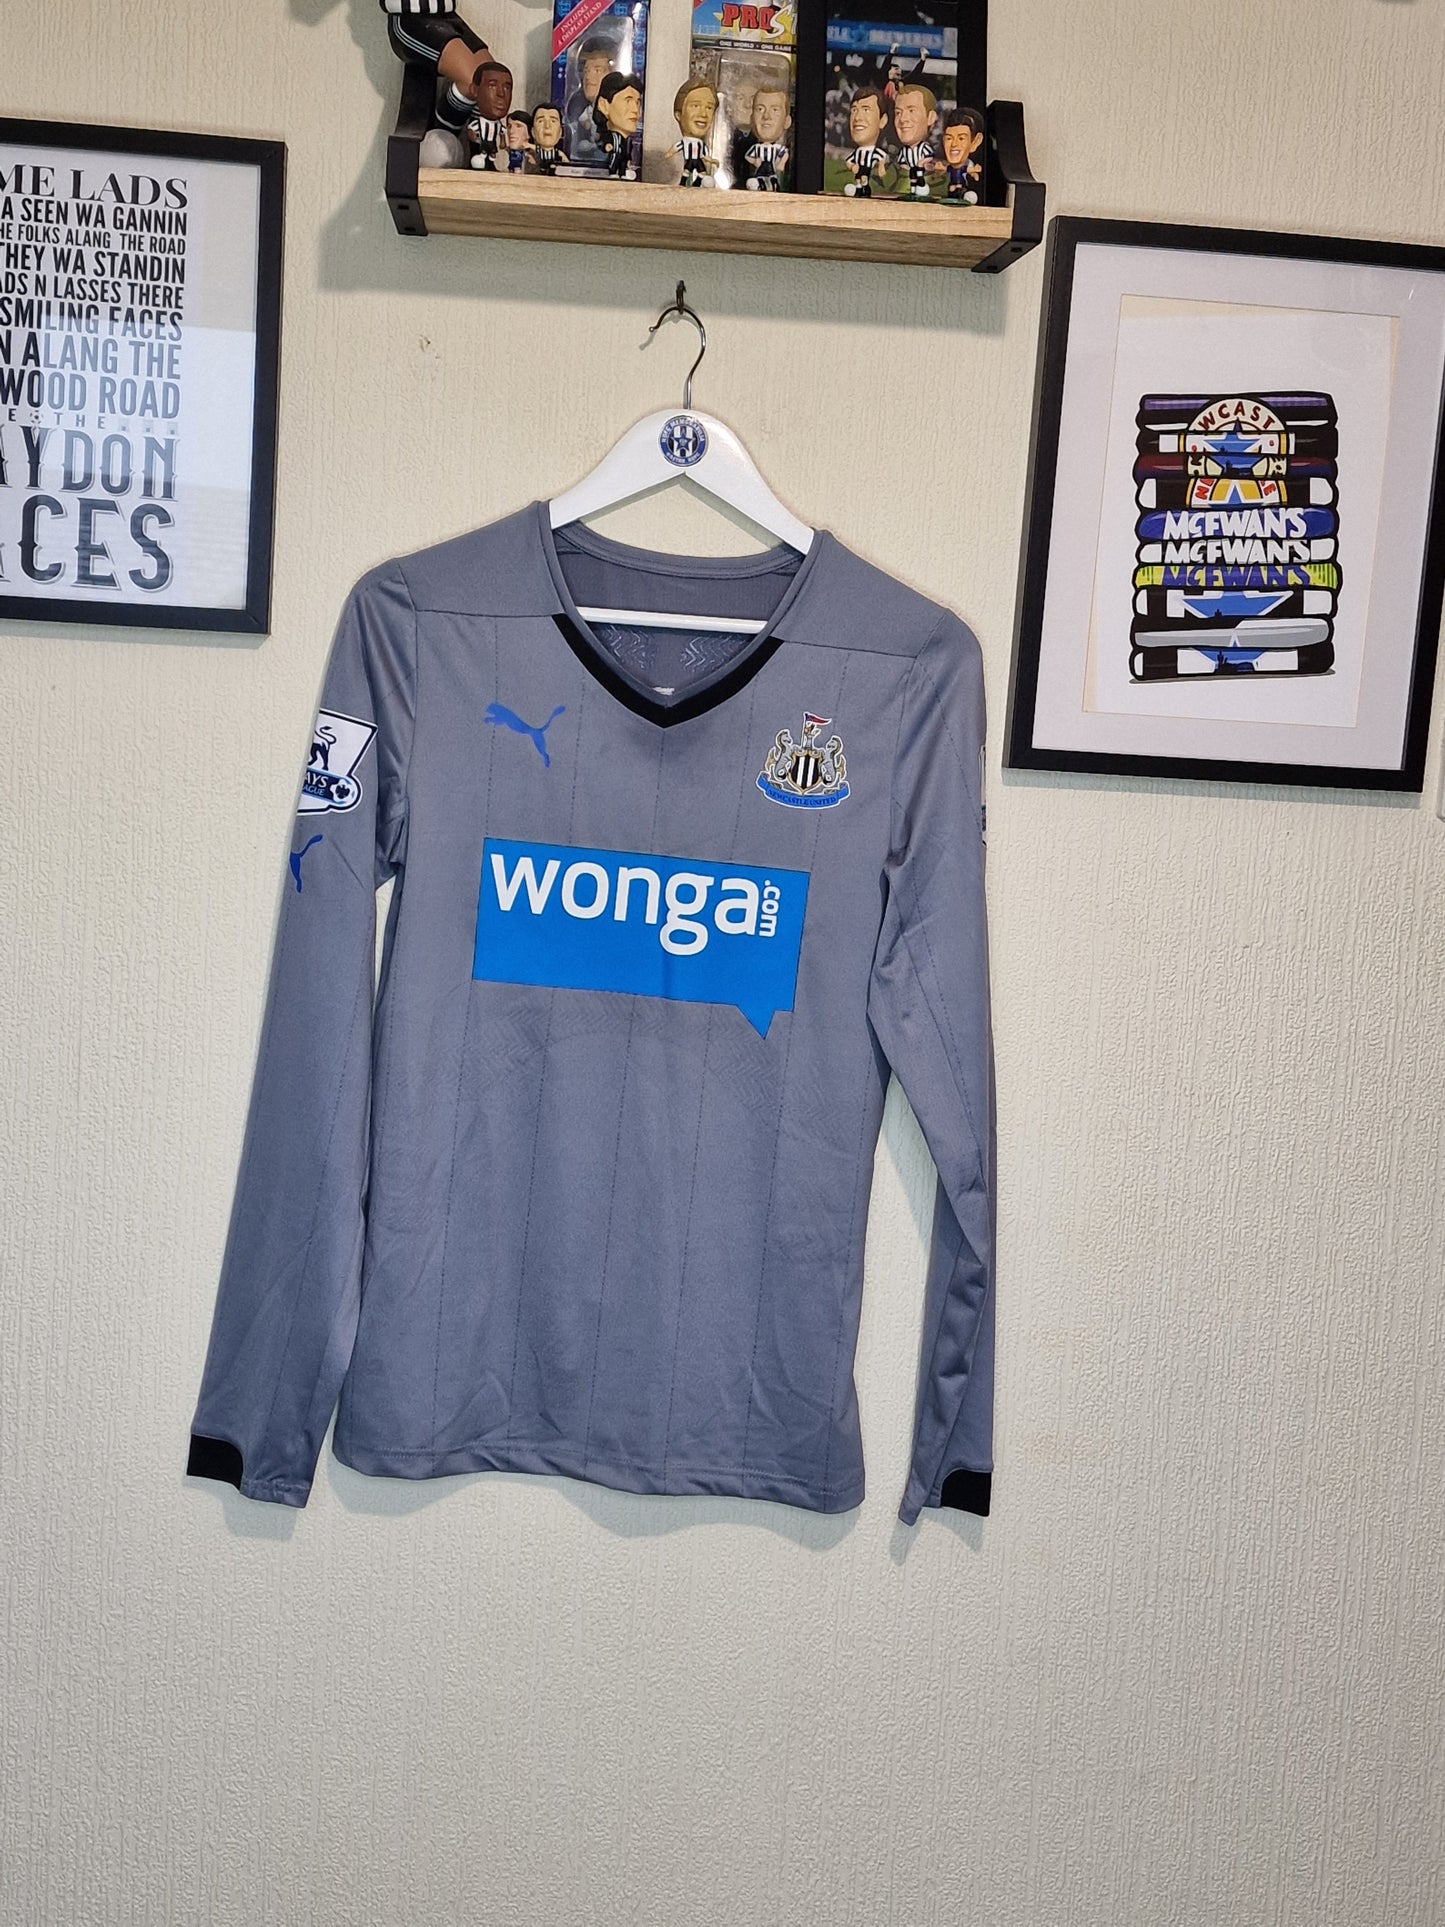 Yohann Gouffran 2014/15 Match issued Newcastle United shirt